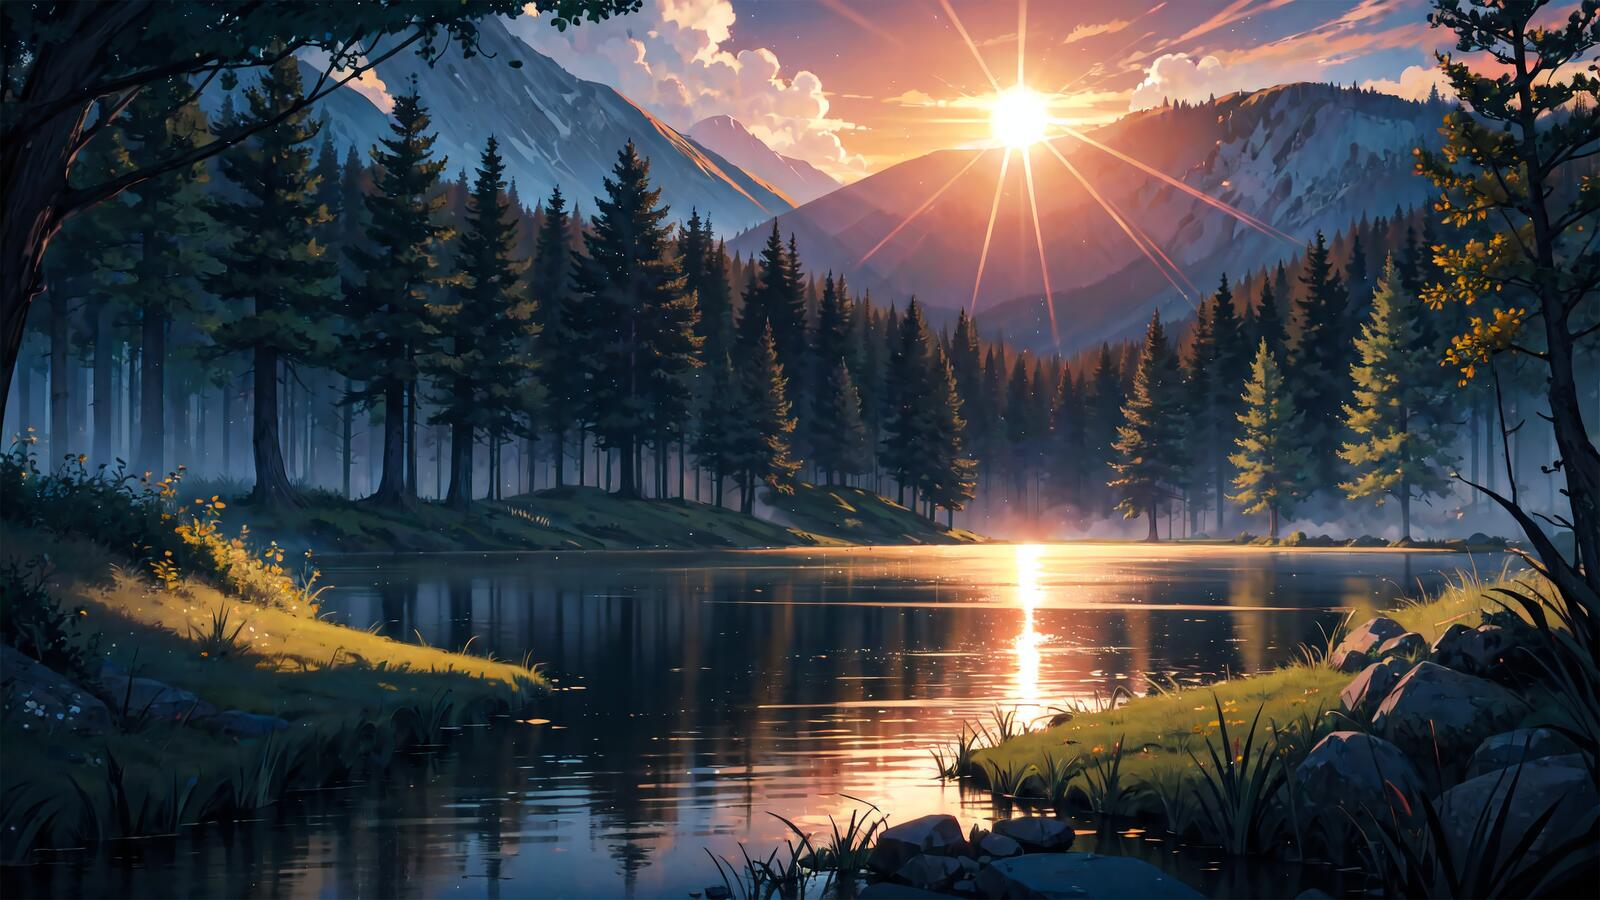 Бесплатное фото Лучи заходящего солнца освещают озеро